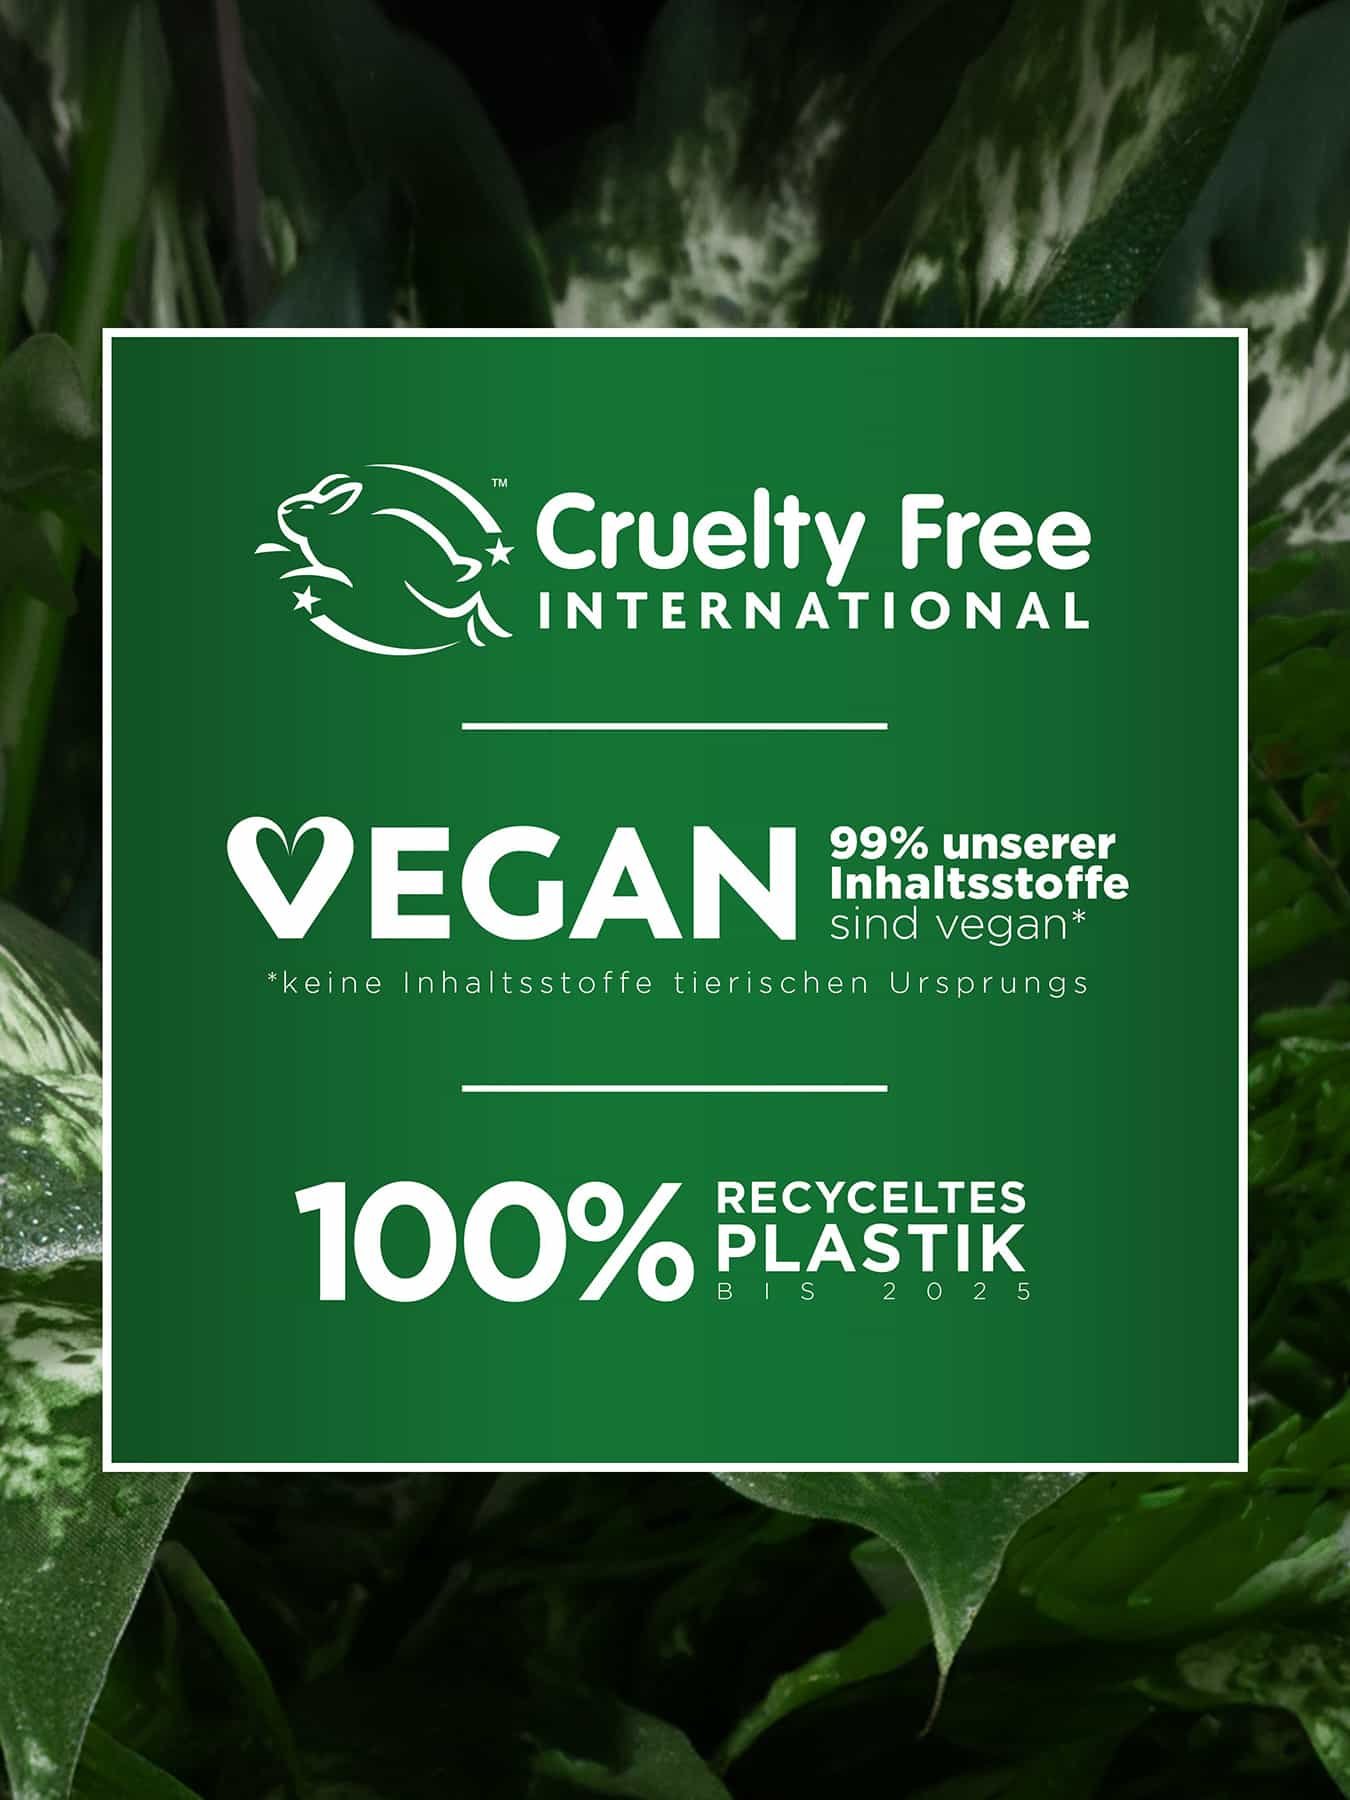 Logo von Cruelty Free International, 99% vegane Inhaltsstoffe & 100% recyceltes Plastik bis 2025